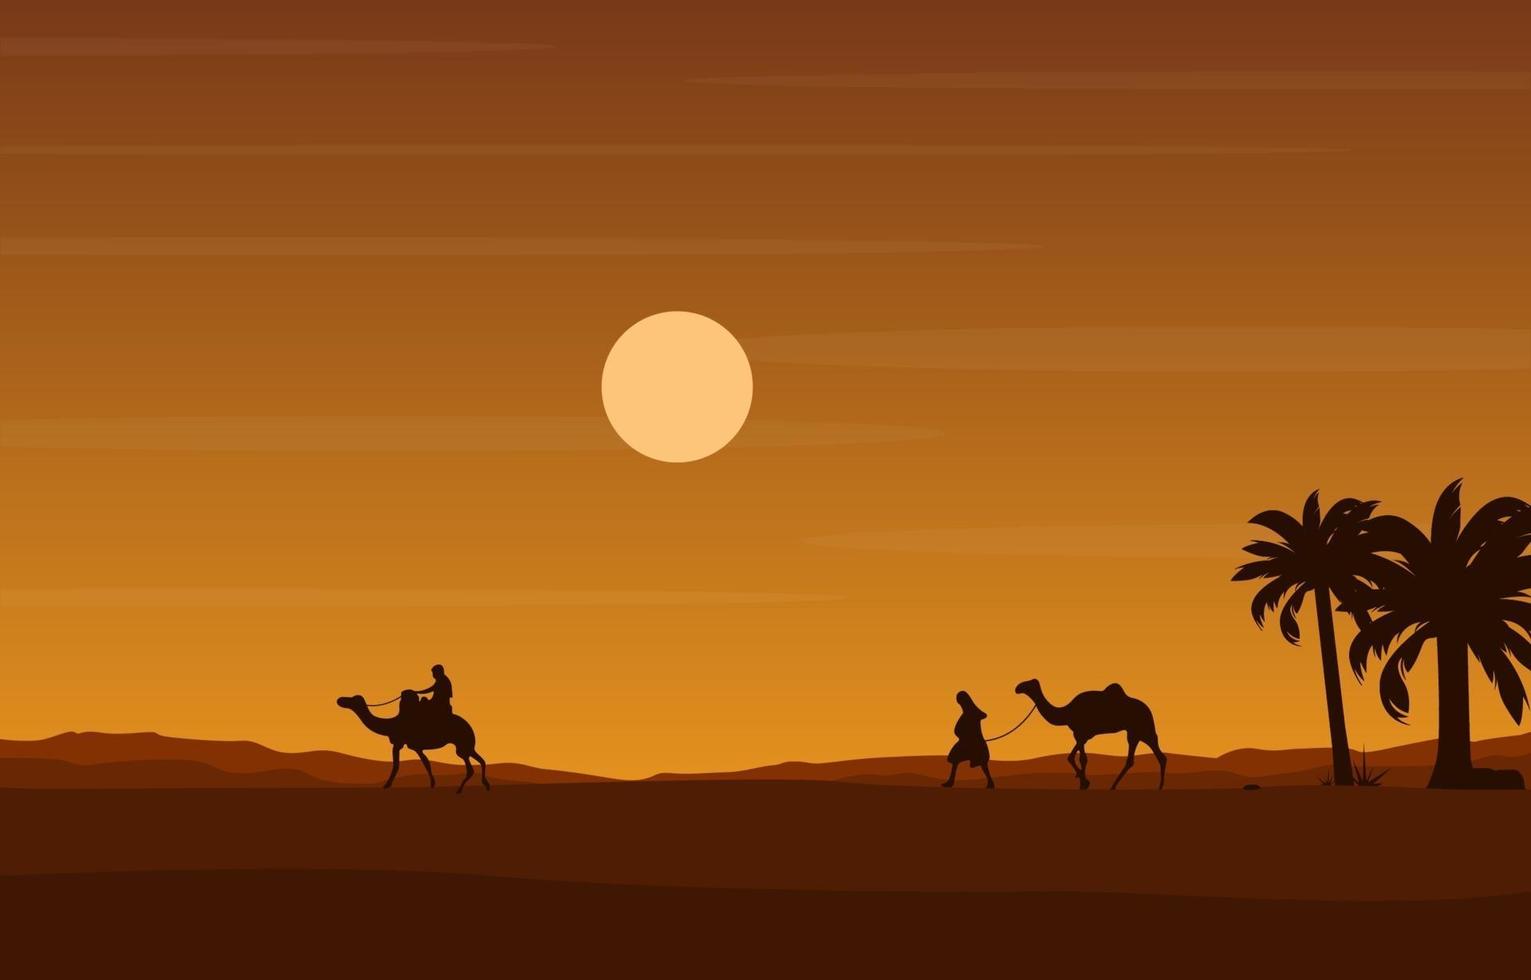 camel rider cruzando a vasta colina do deserto ilustração da paisagem árabe vetor